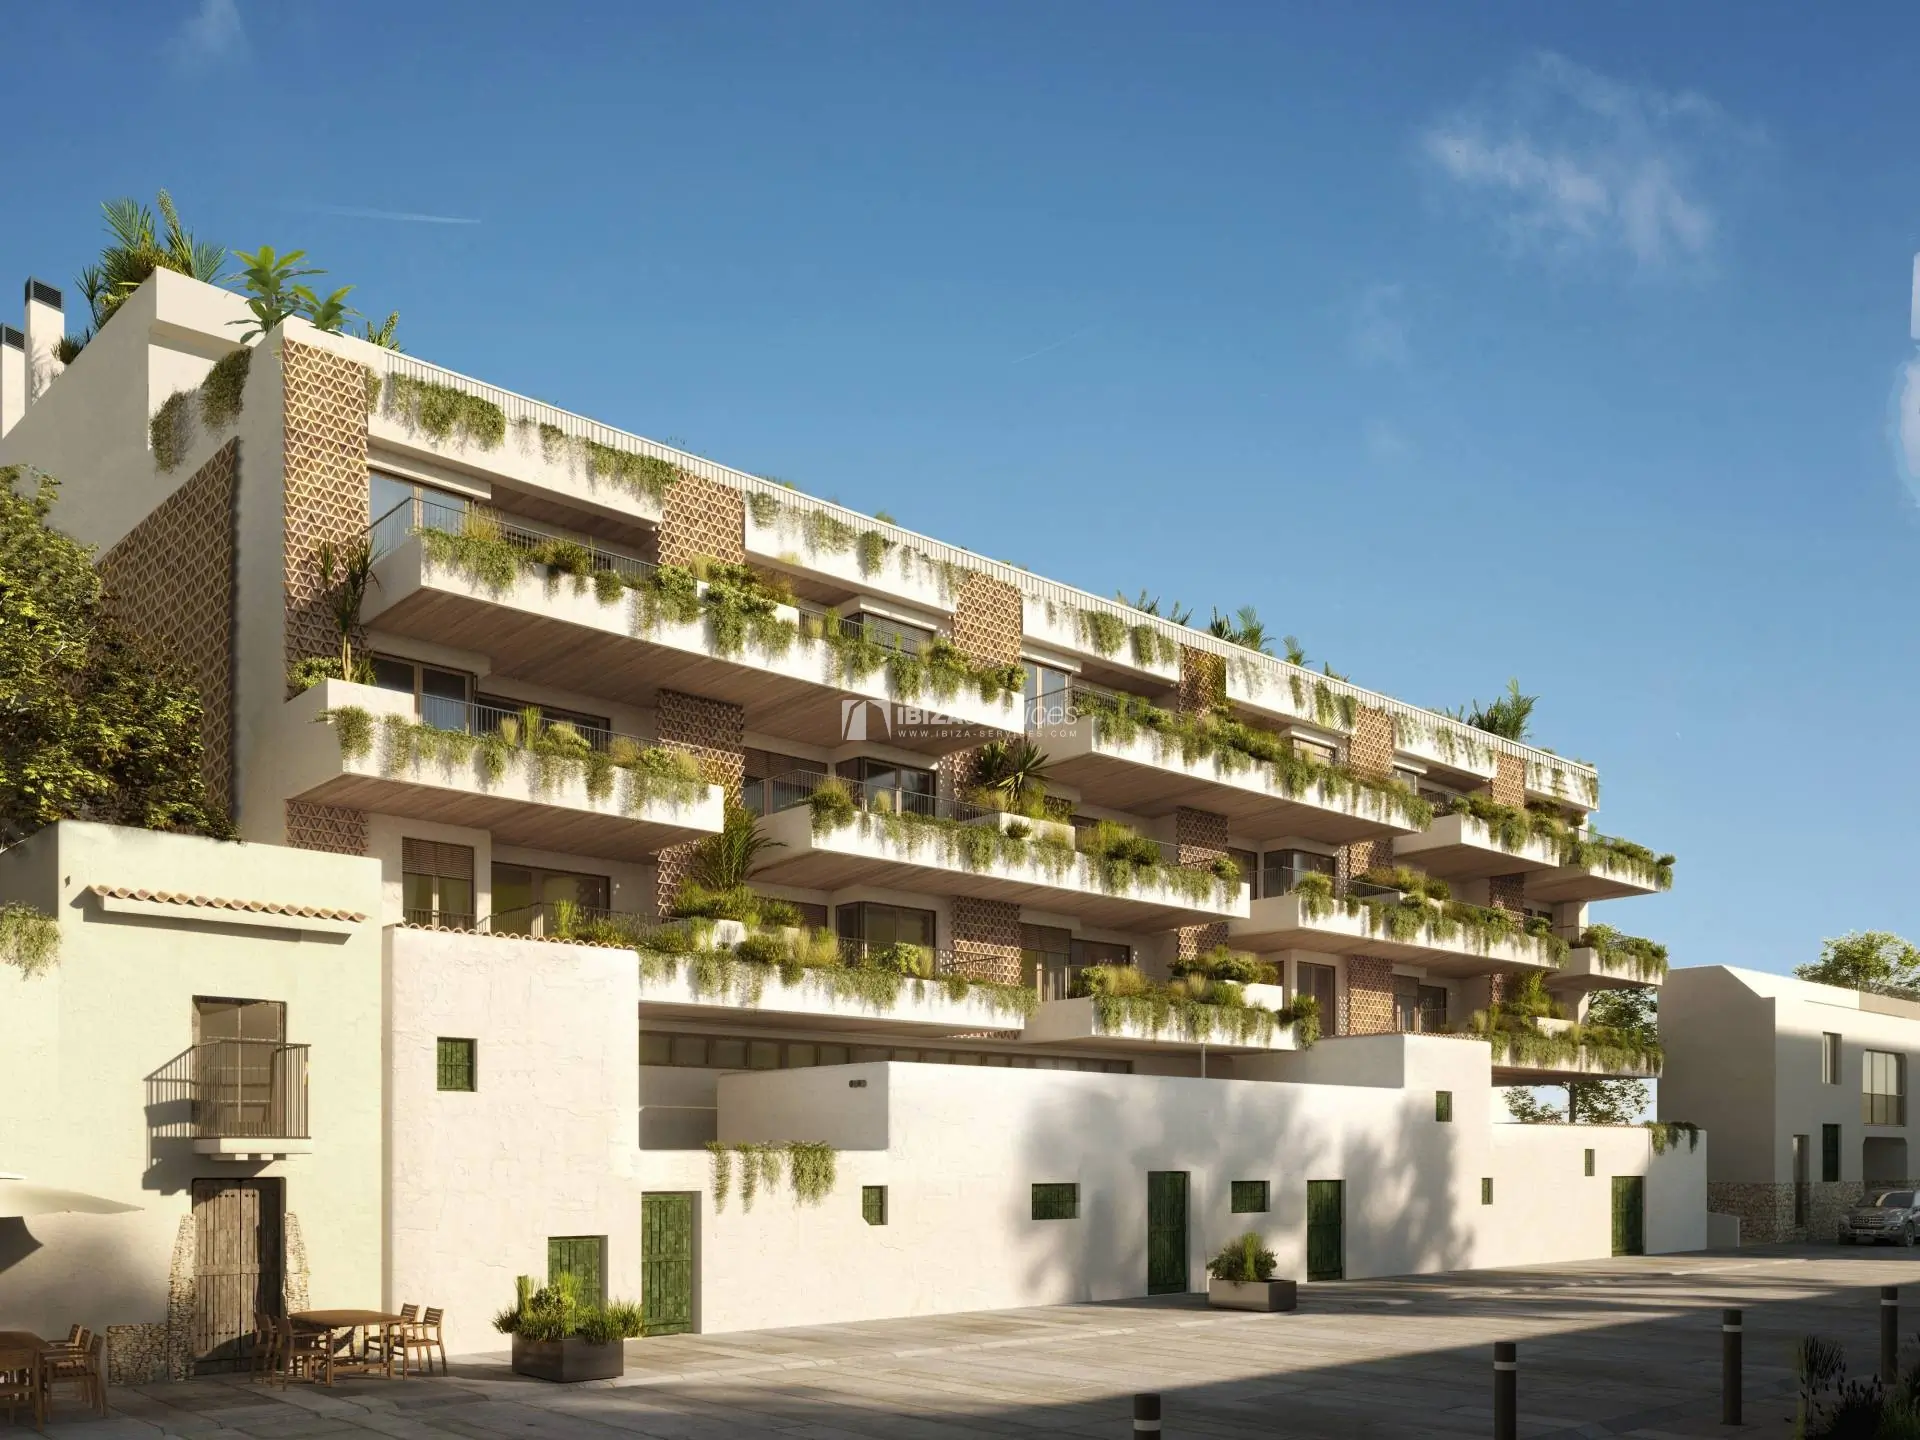 Neues Wohnprojekt mit 57 Häusern in Santa Eulalia, Ibiza zu verkaufen